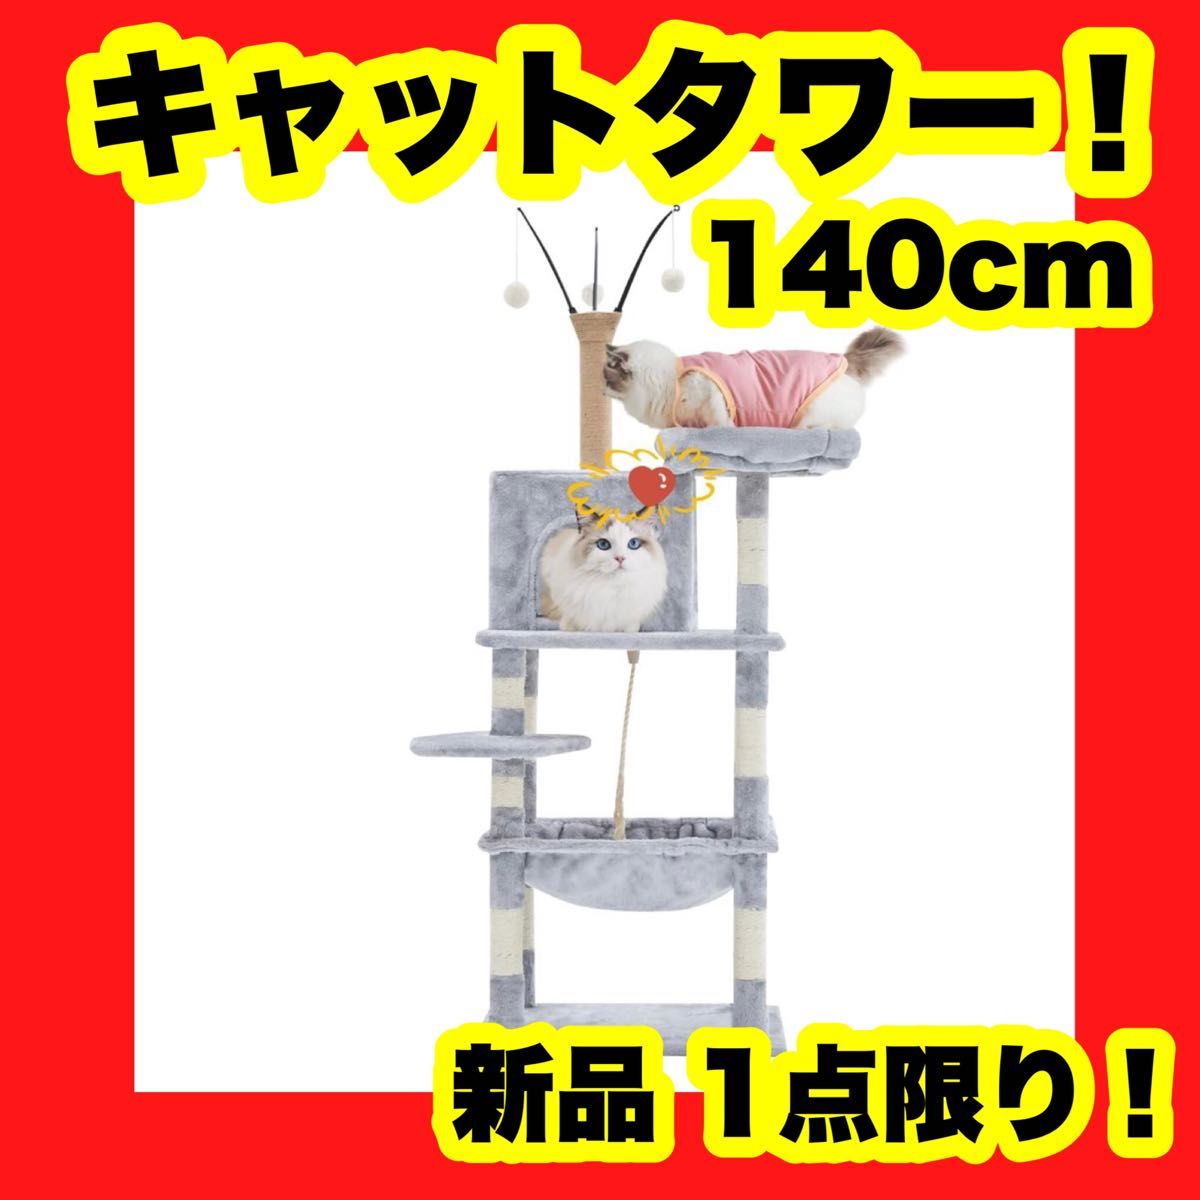 キャットタワー 猫タワー キャットツリー スリム グレー 140cm 据え置き かわいい 猫タワー  据え置き型キャットタワー